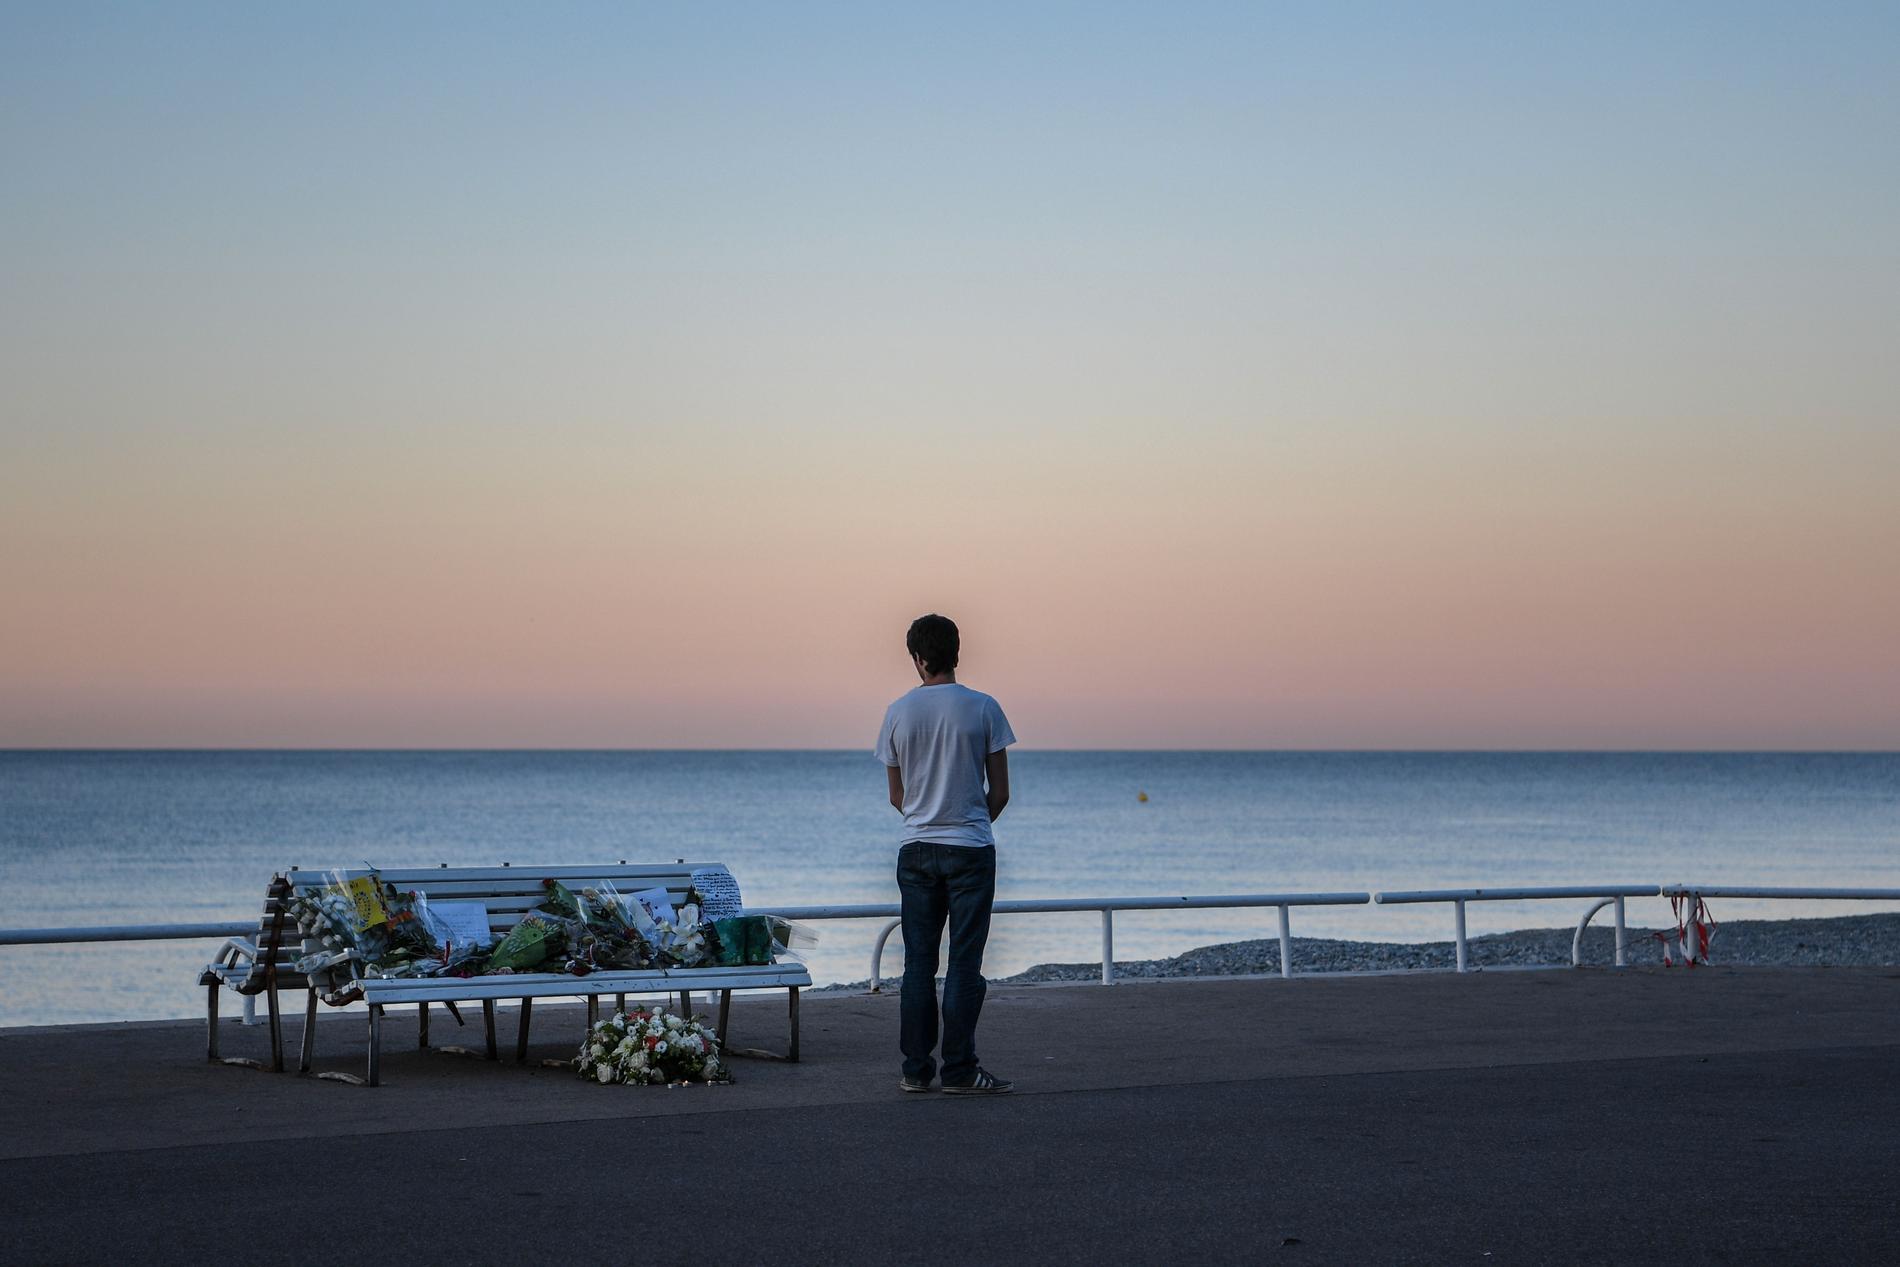 Samma dag som terrordådet genomfördes gick 31-åringen på Promenade Des Anglais och tog selfies. På bilden: En man tittar på blommor som lämnats på en strand nära platsen för attacken för att hedra dödsoffren.